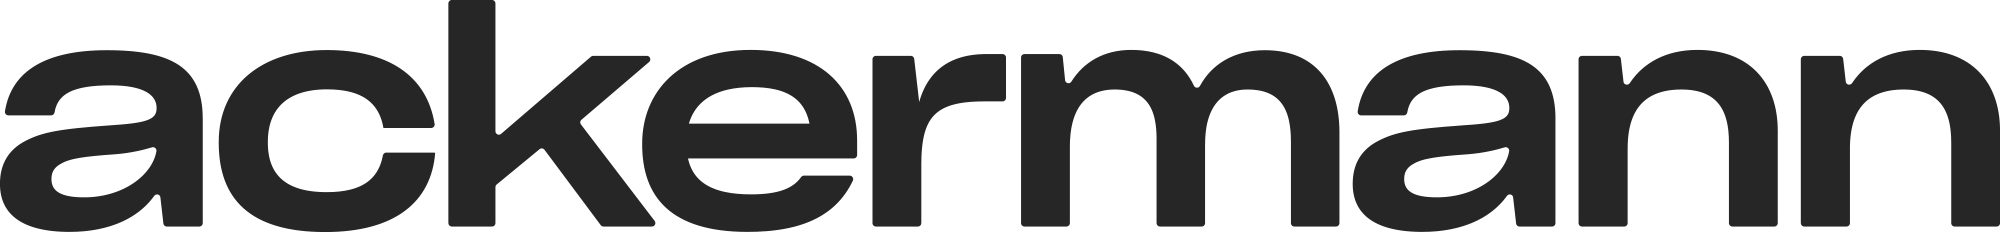 Ackermann_logo